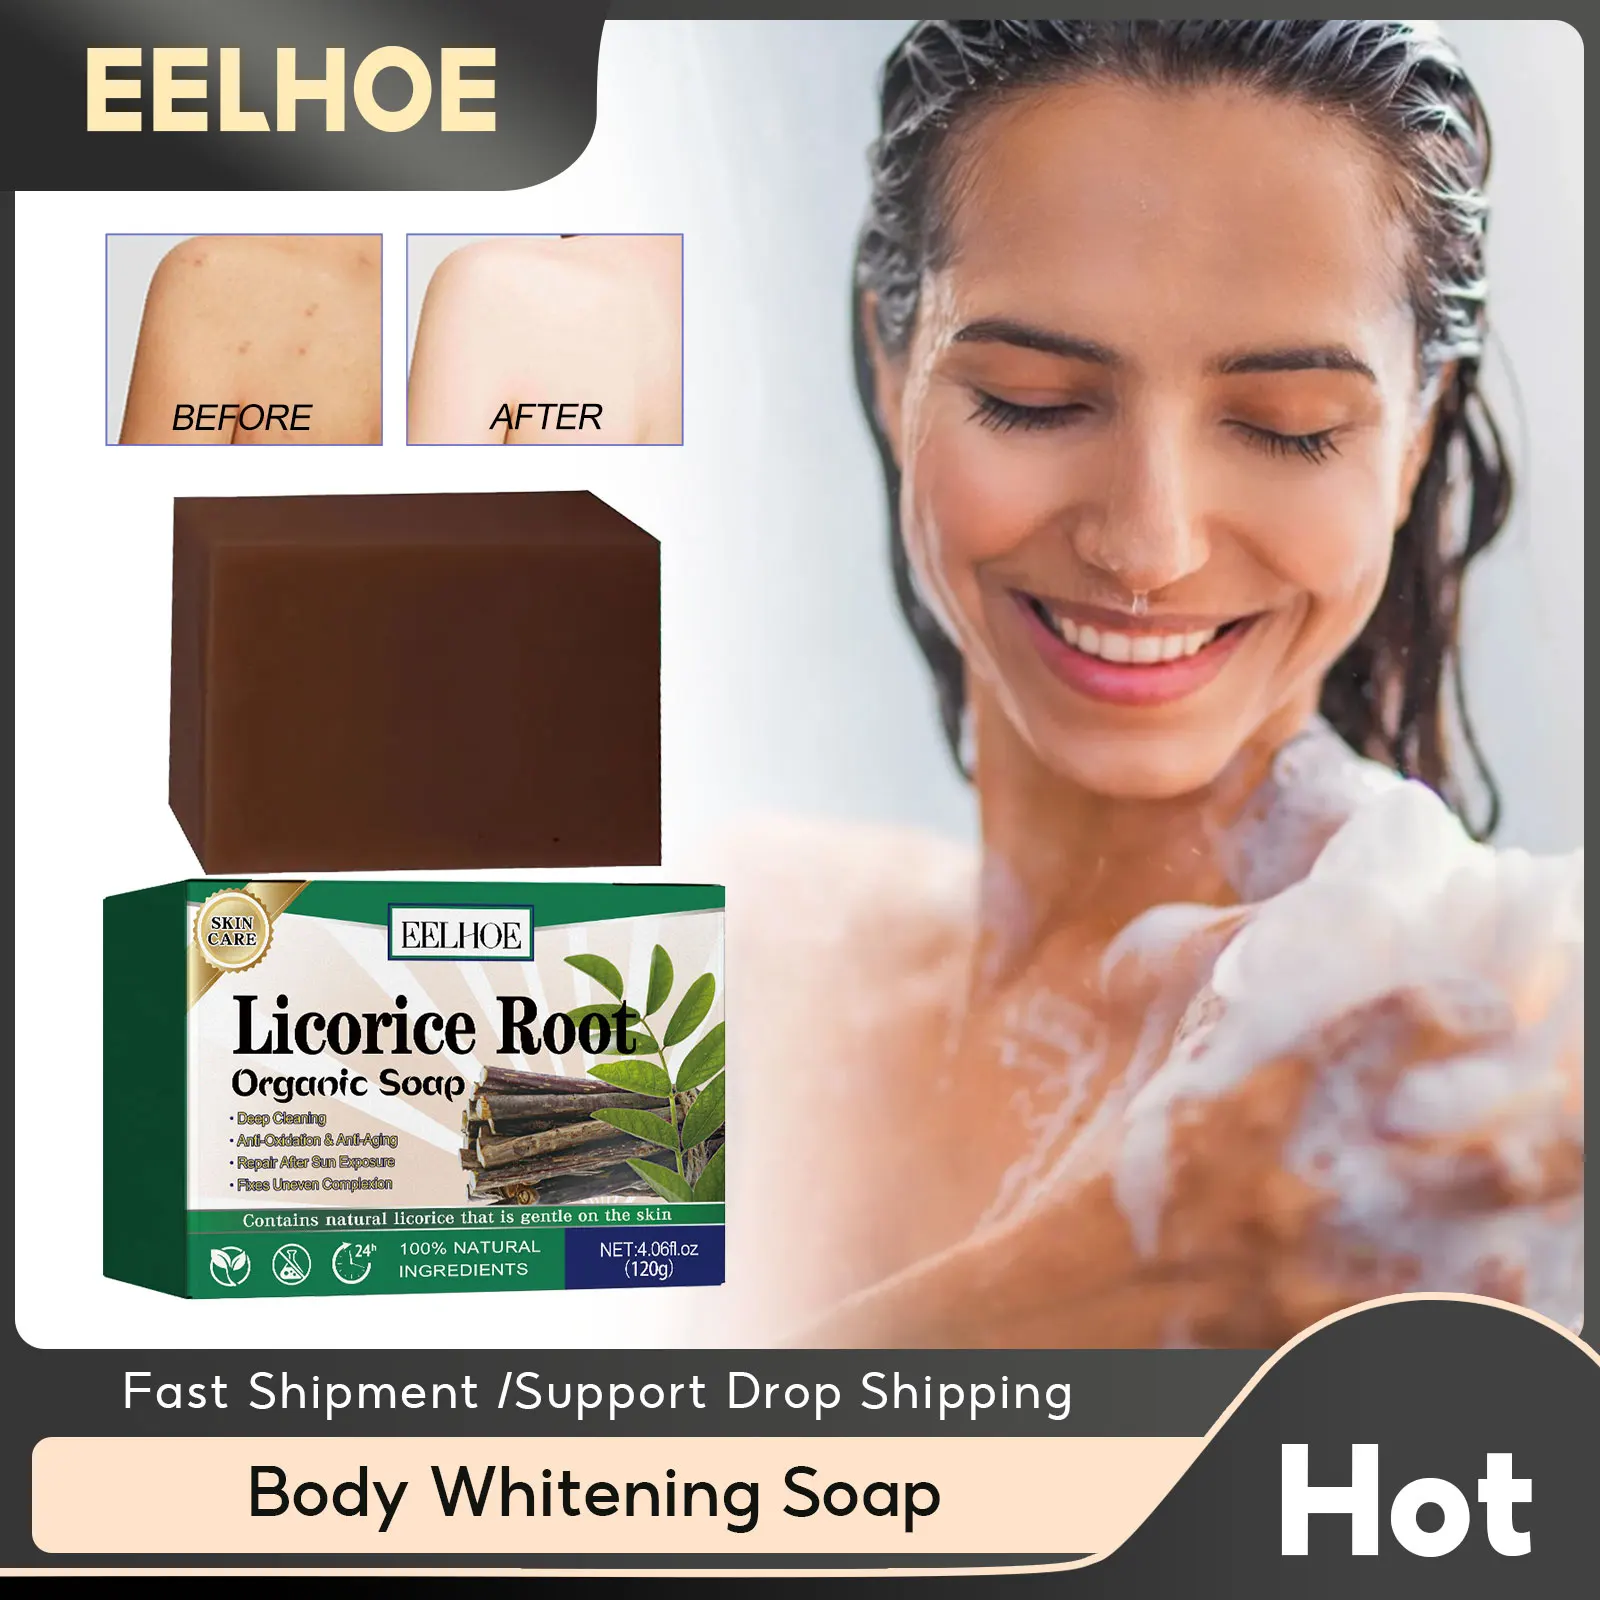 

Увлажняющее Отбеливающее мыло EELHOE для тела, удаление темных пятен, меланин, осветление, осветление локтя, суставов колена, отбеливание кожи, глубокое очищение